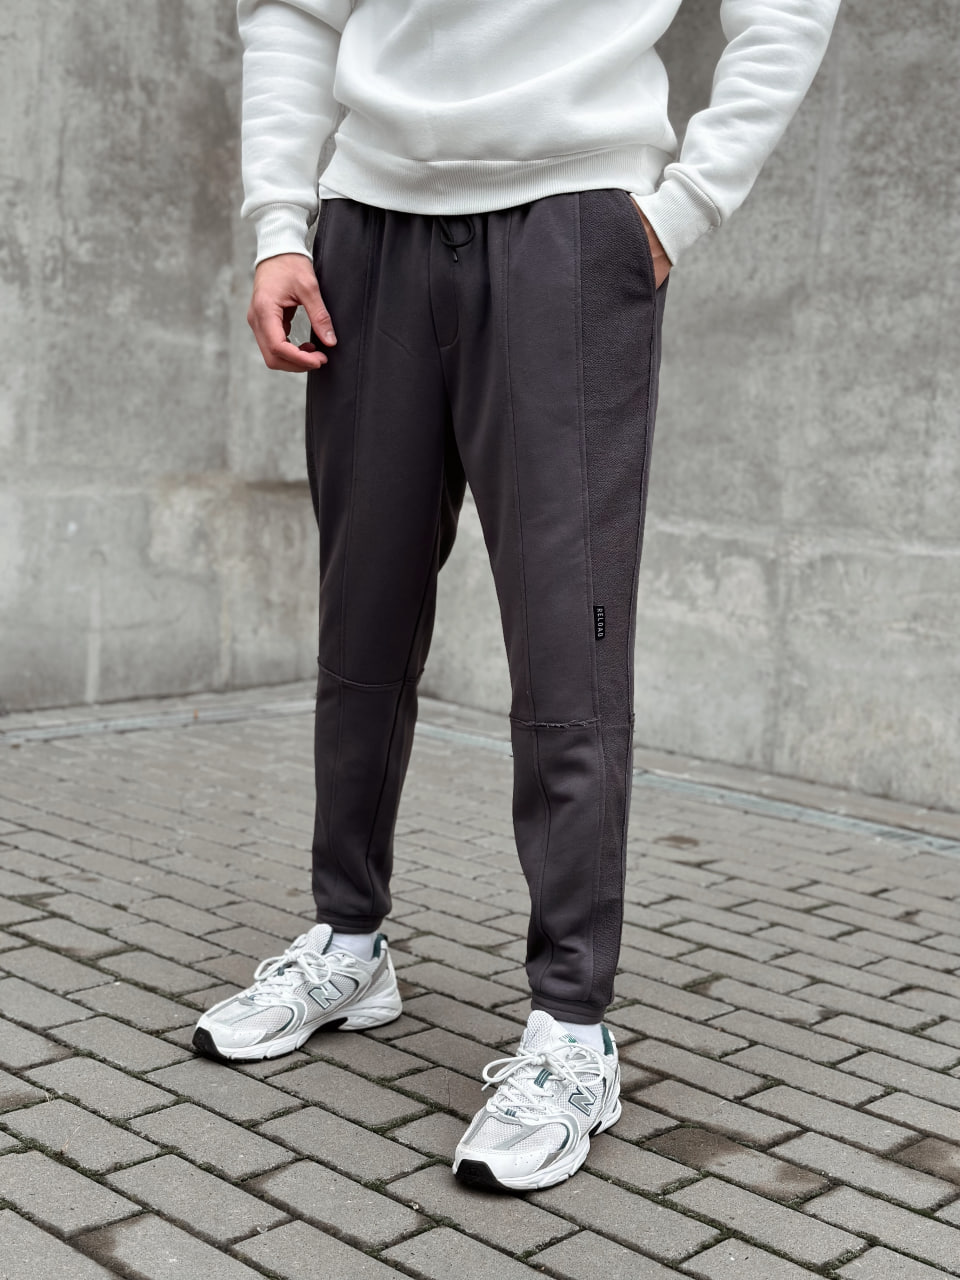 Чоловічі спортивні штани трикотажні Reload Rough сірі / Спортивки завуженні стильні демісезонні - Фото 5